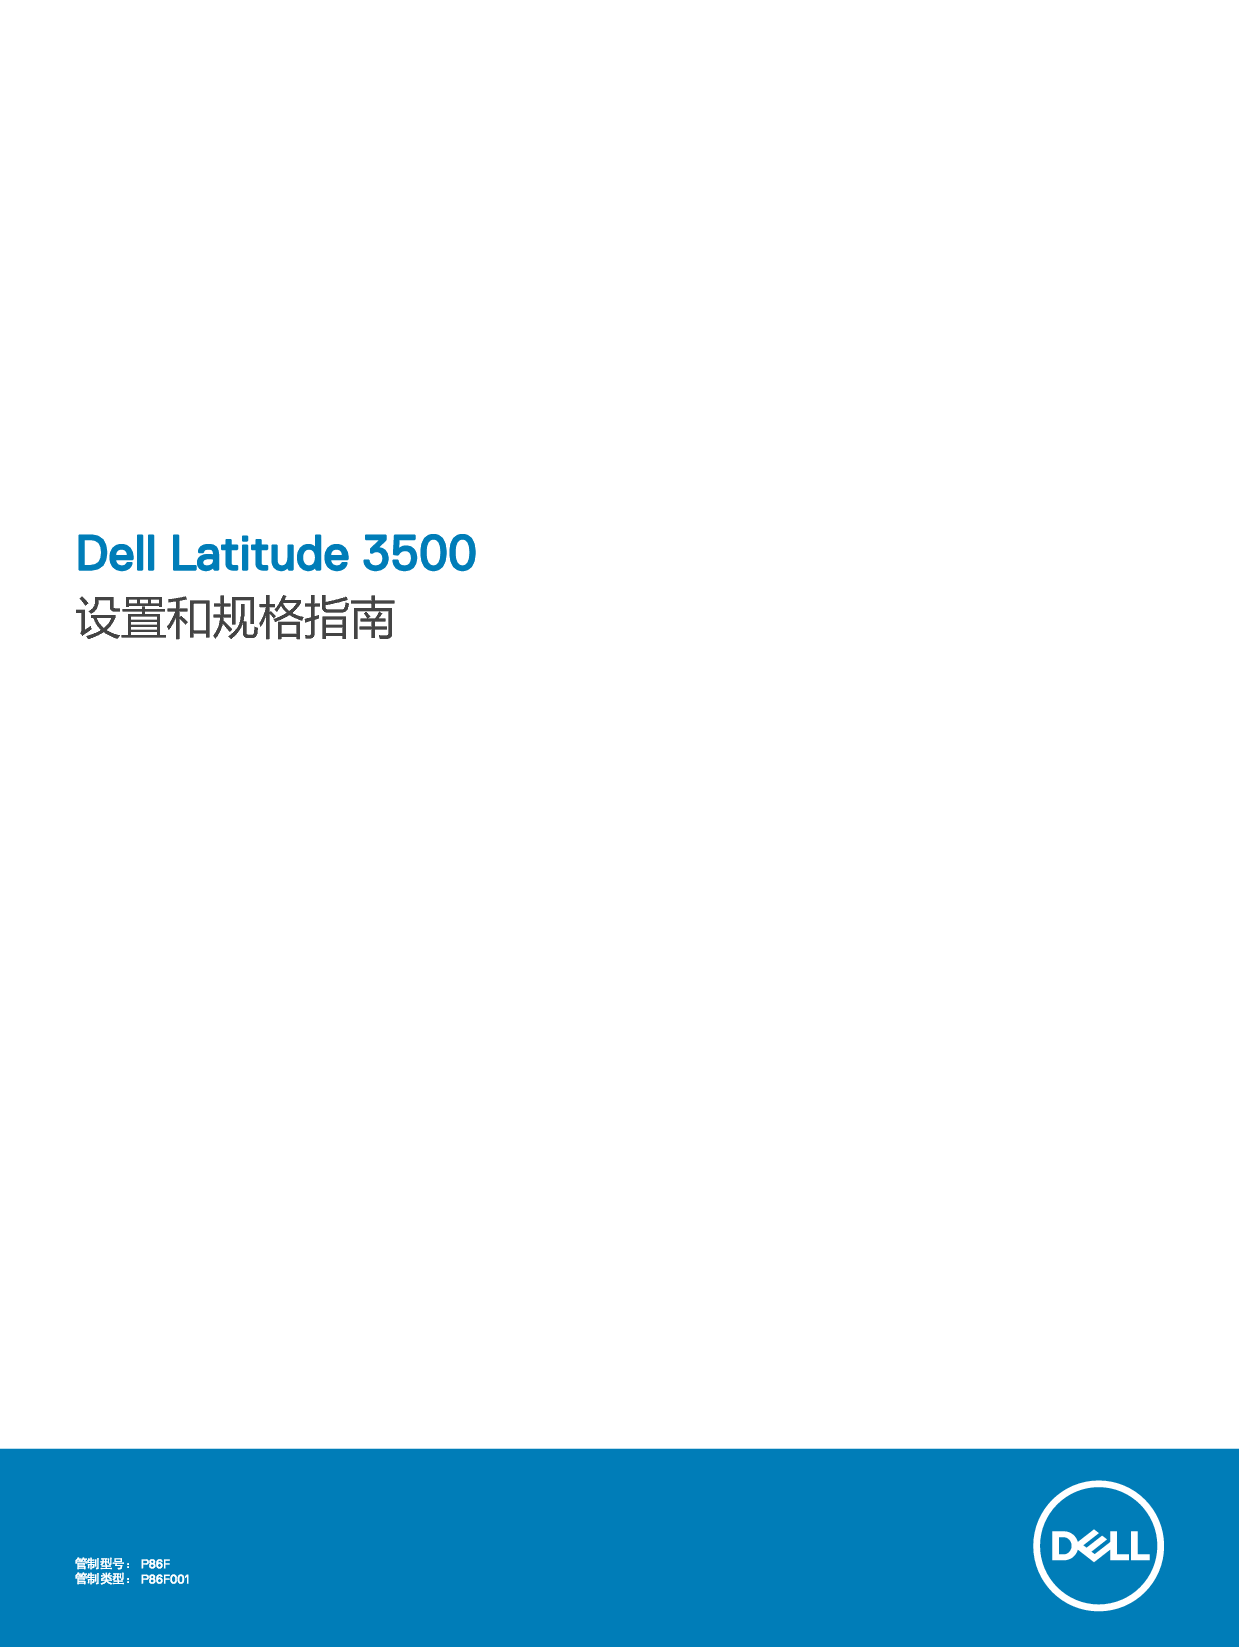 戴尔 Dell Latitude 3500 用户手册 封面